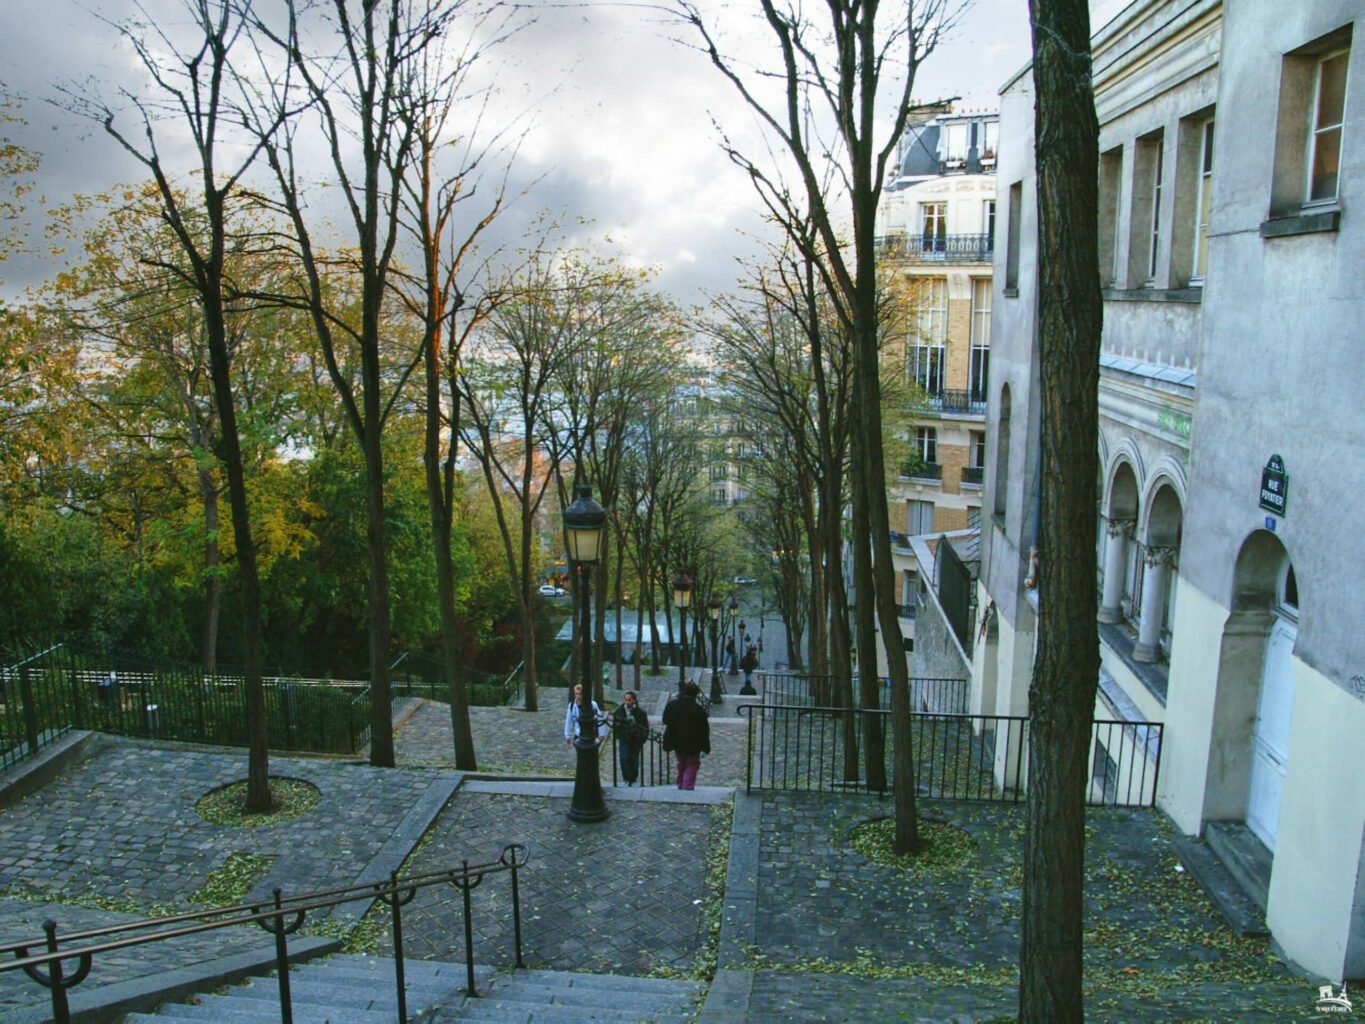 Escaleras de la Rue Foyatier, Montmartre